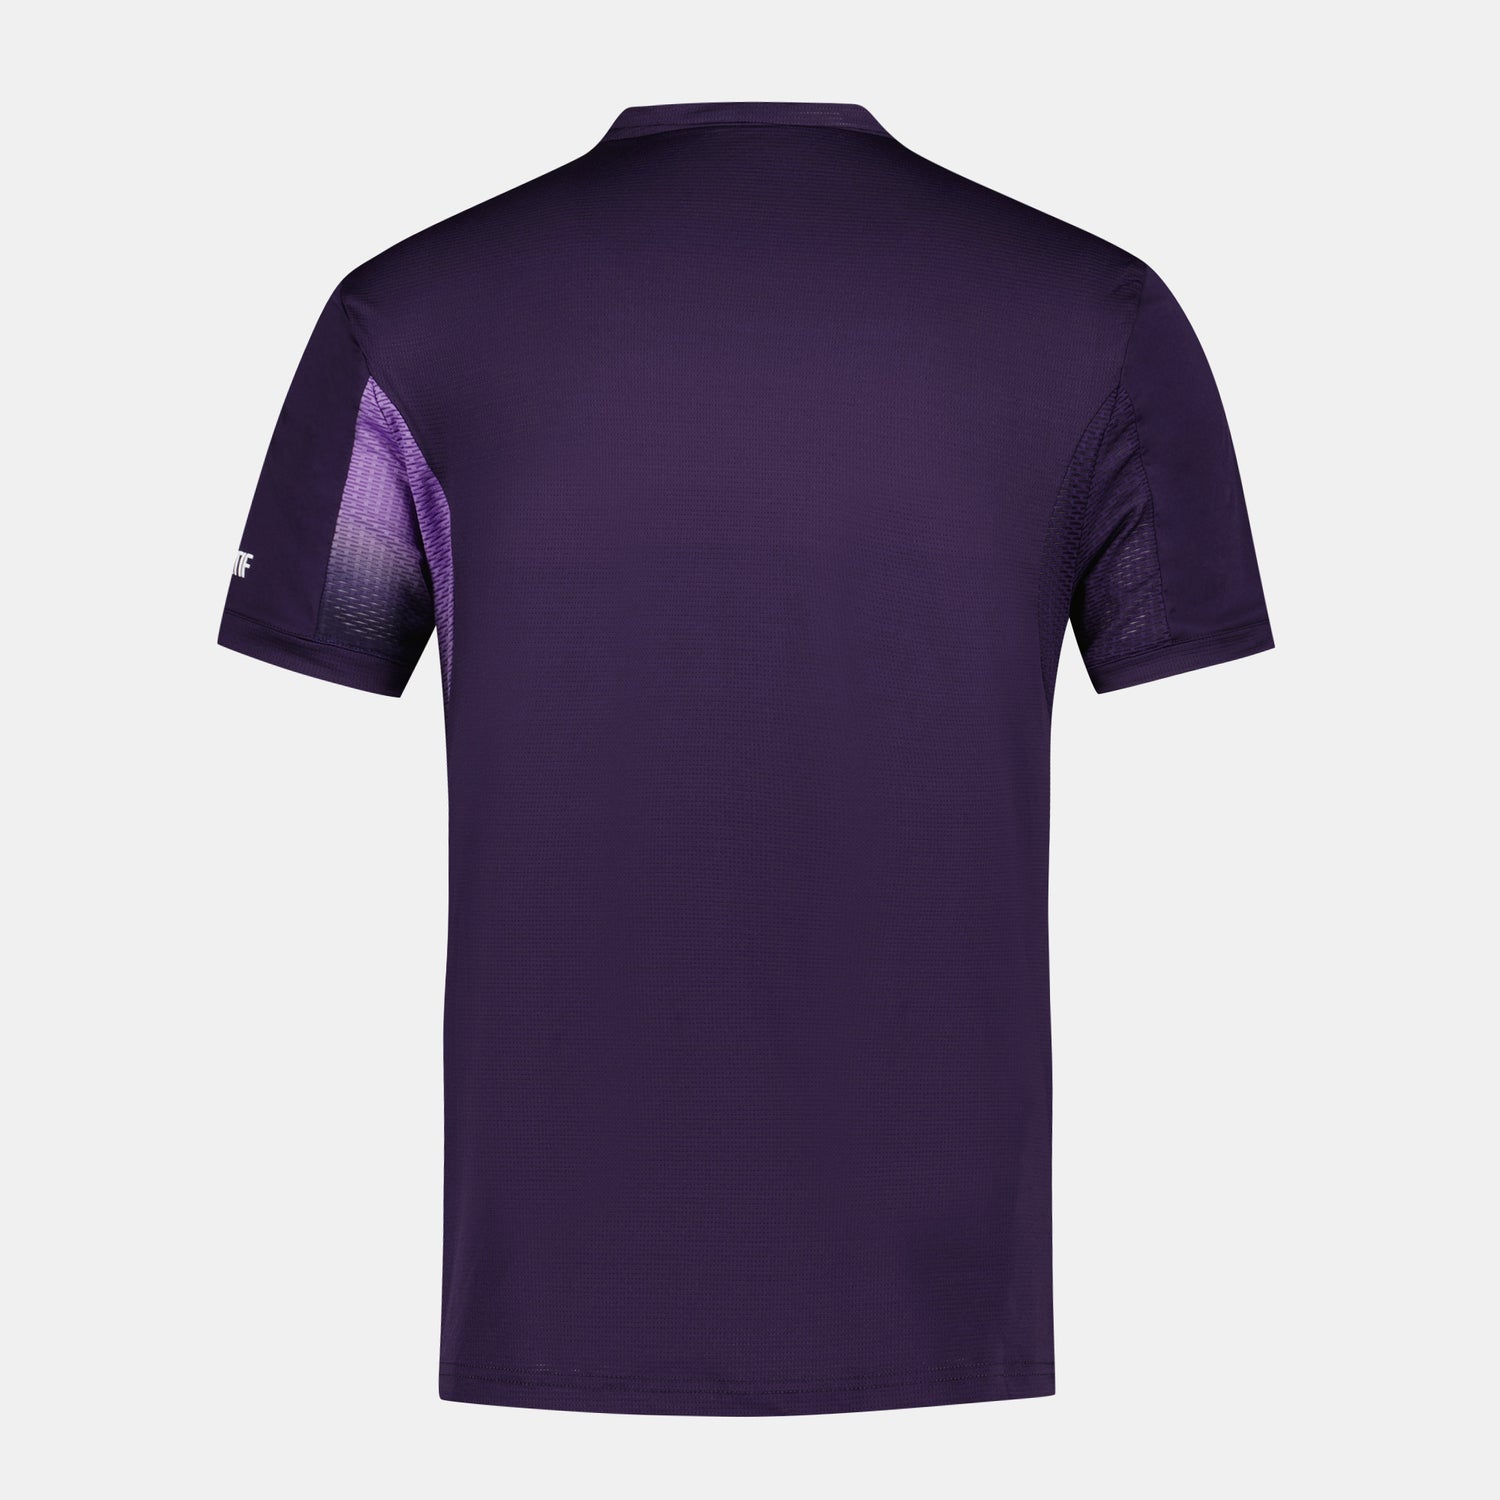 2410516-TENNIS PRO Tee SS 24 N°1 M purple velvet | T-shirt Homme